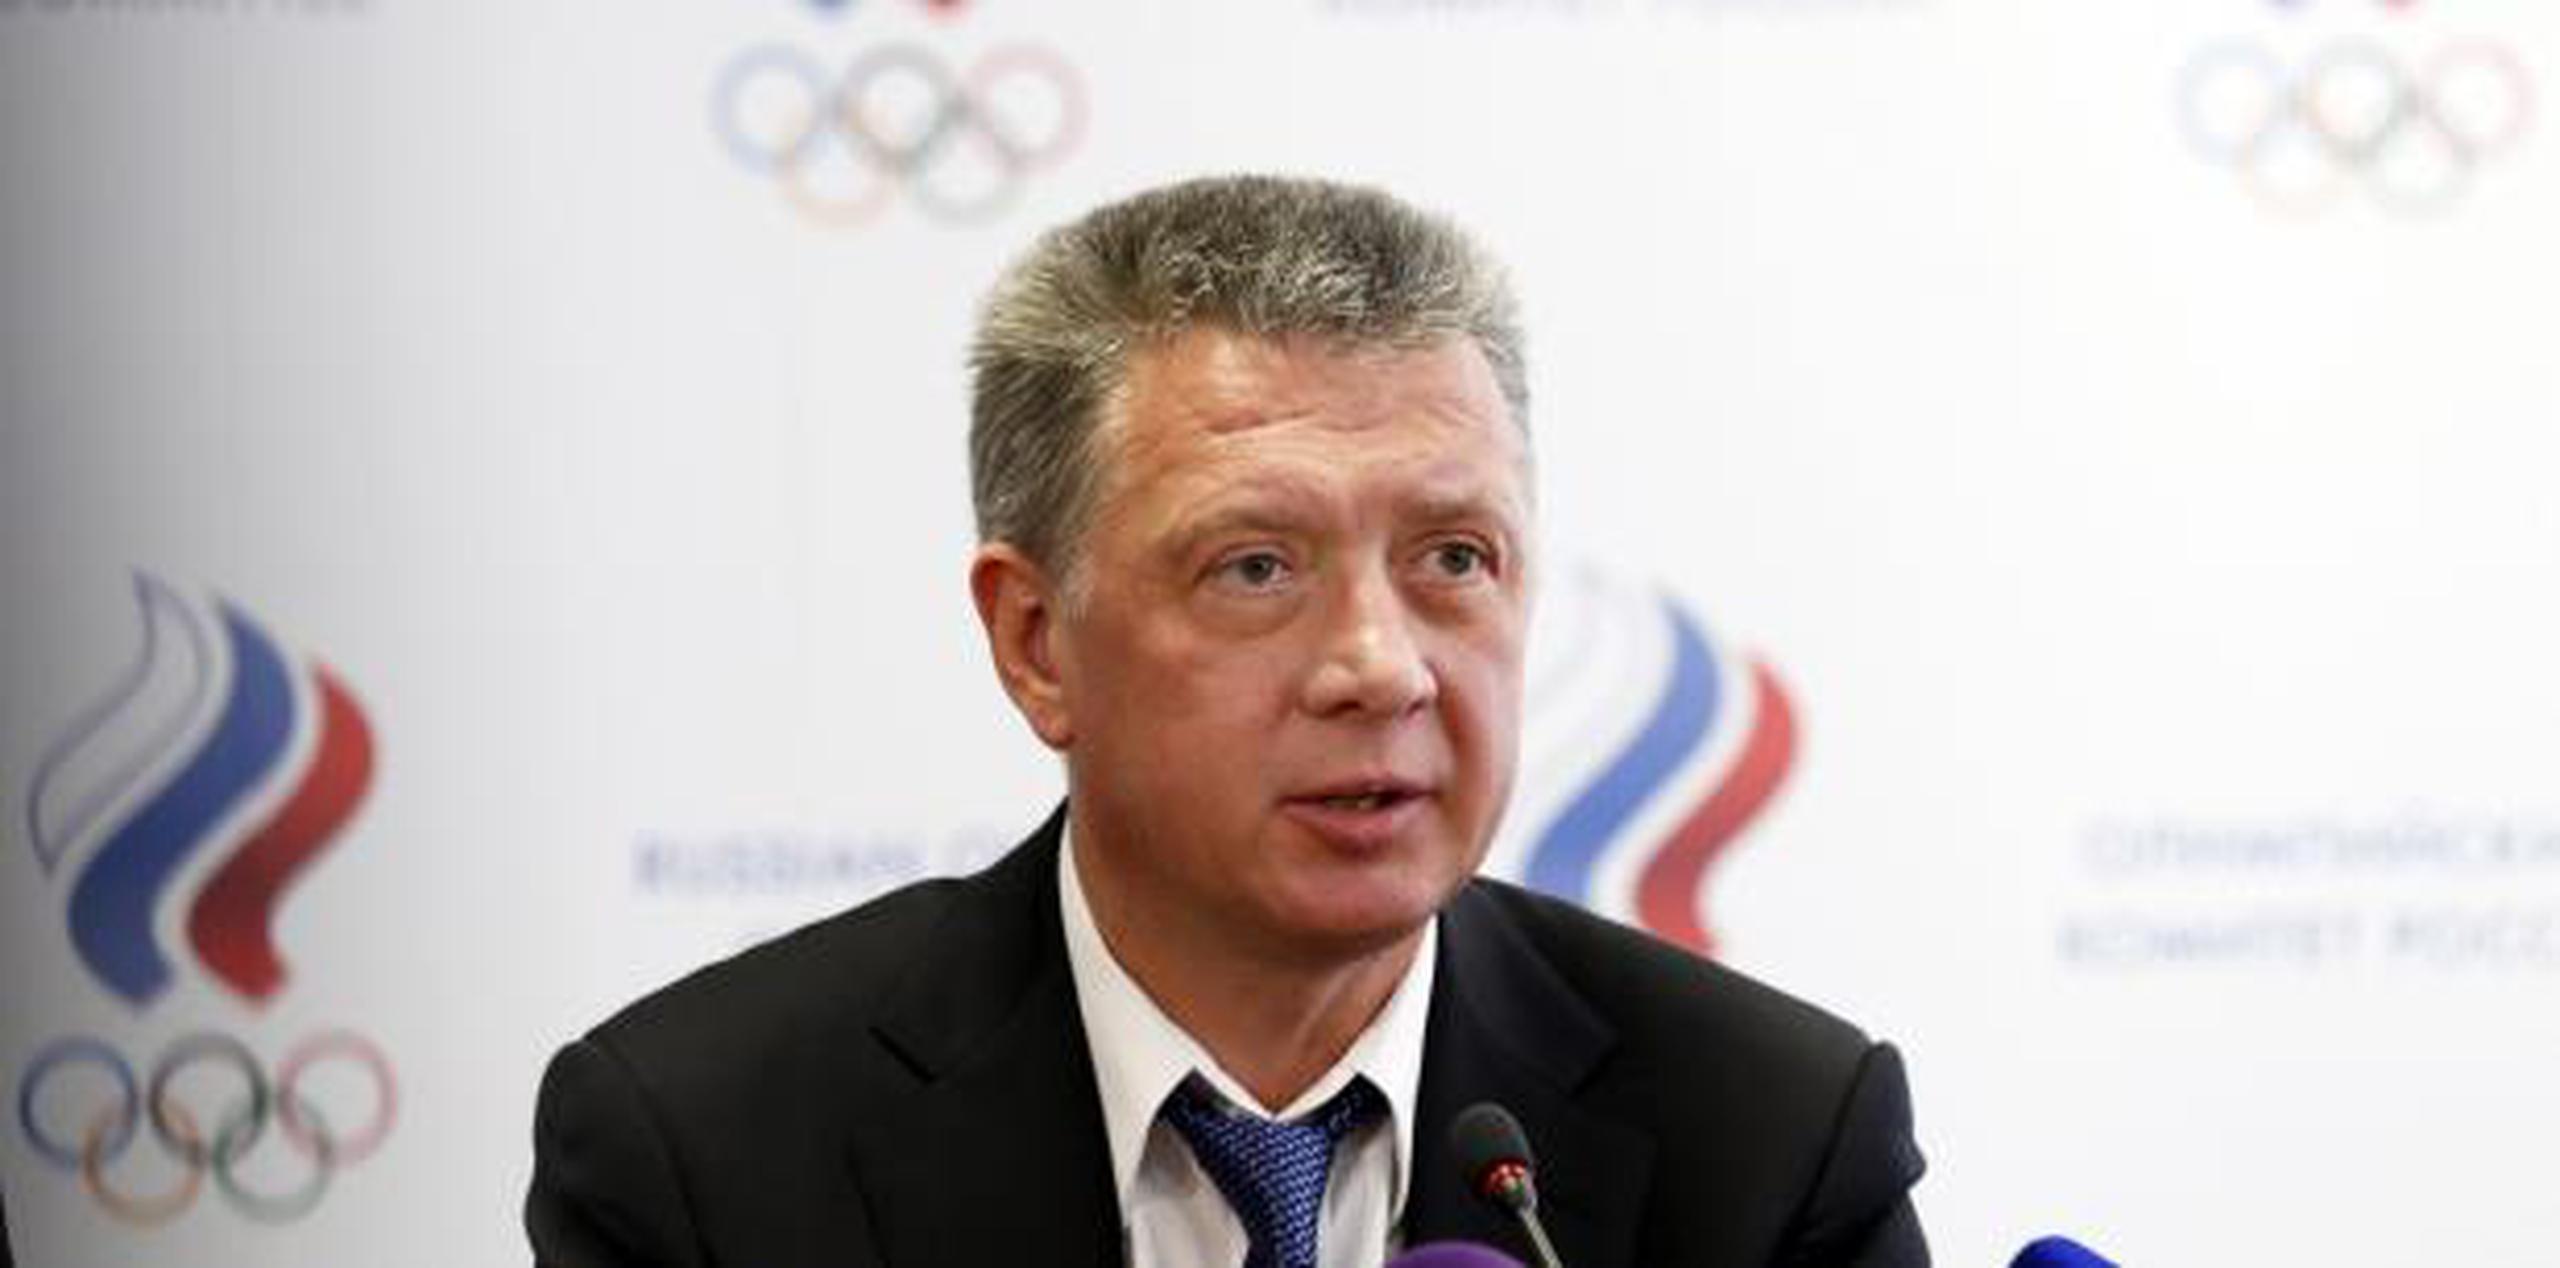 La suspención se debe al grave escándalo de dopaje en Rusia, motivo por el que los atletas rusos no pudieron participar en los Juegos Olímpicos de Río 2016. (EFE)